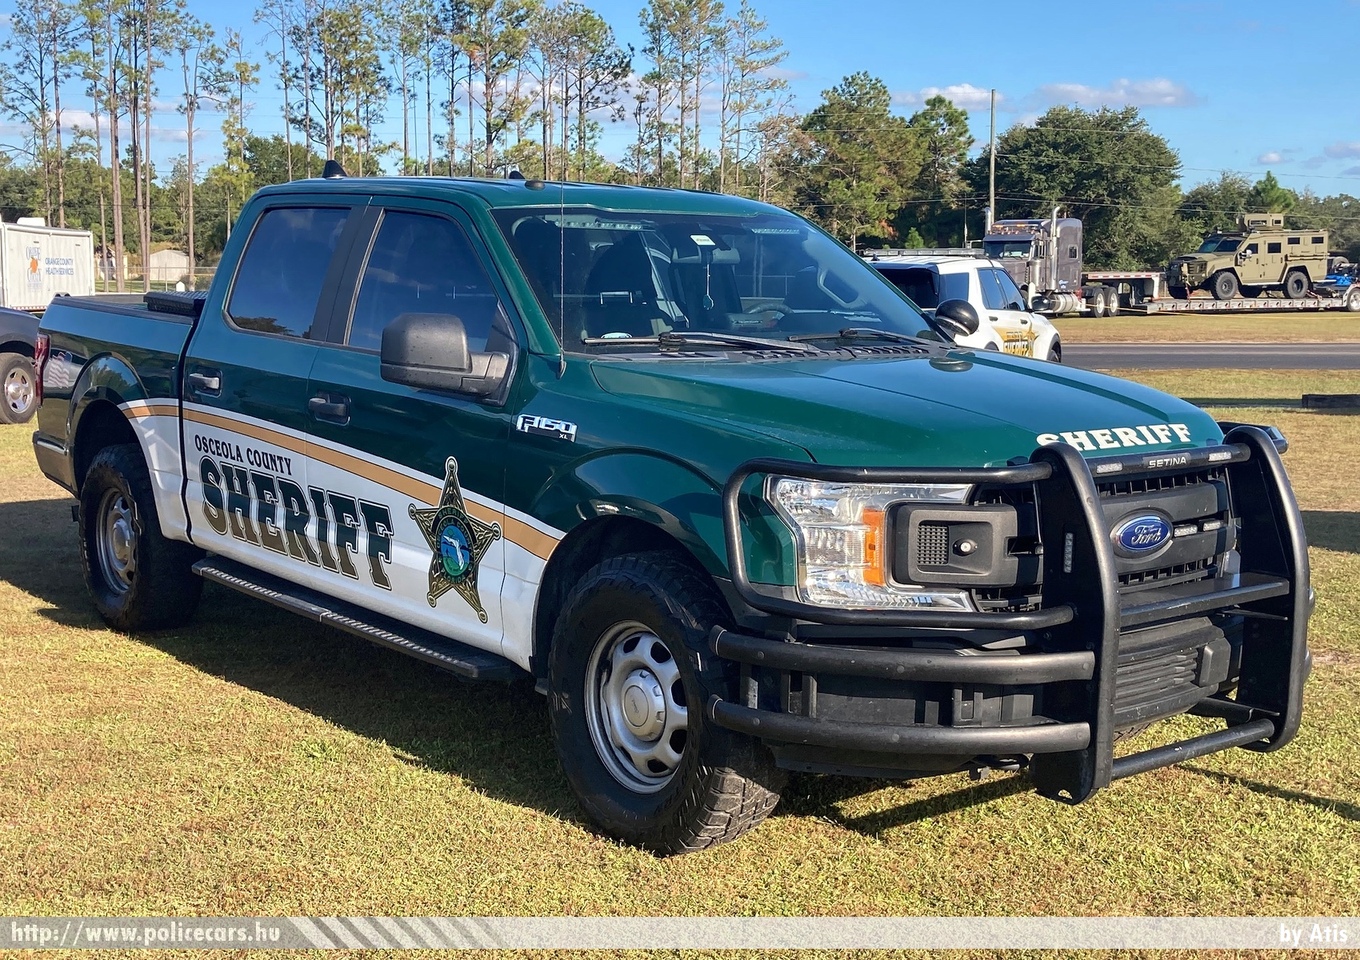 Ford F-150 XLT, Osceola County Sheriff, Florida, fotó: Atis
Keywords: USA Amerikai Egyesült Államok rendőr rendőrautó rendőrség police policecar united states